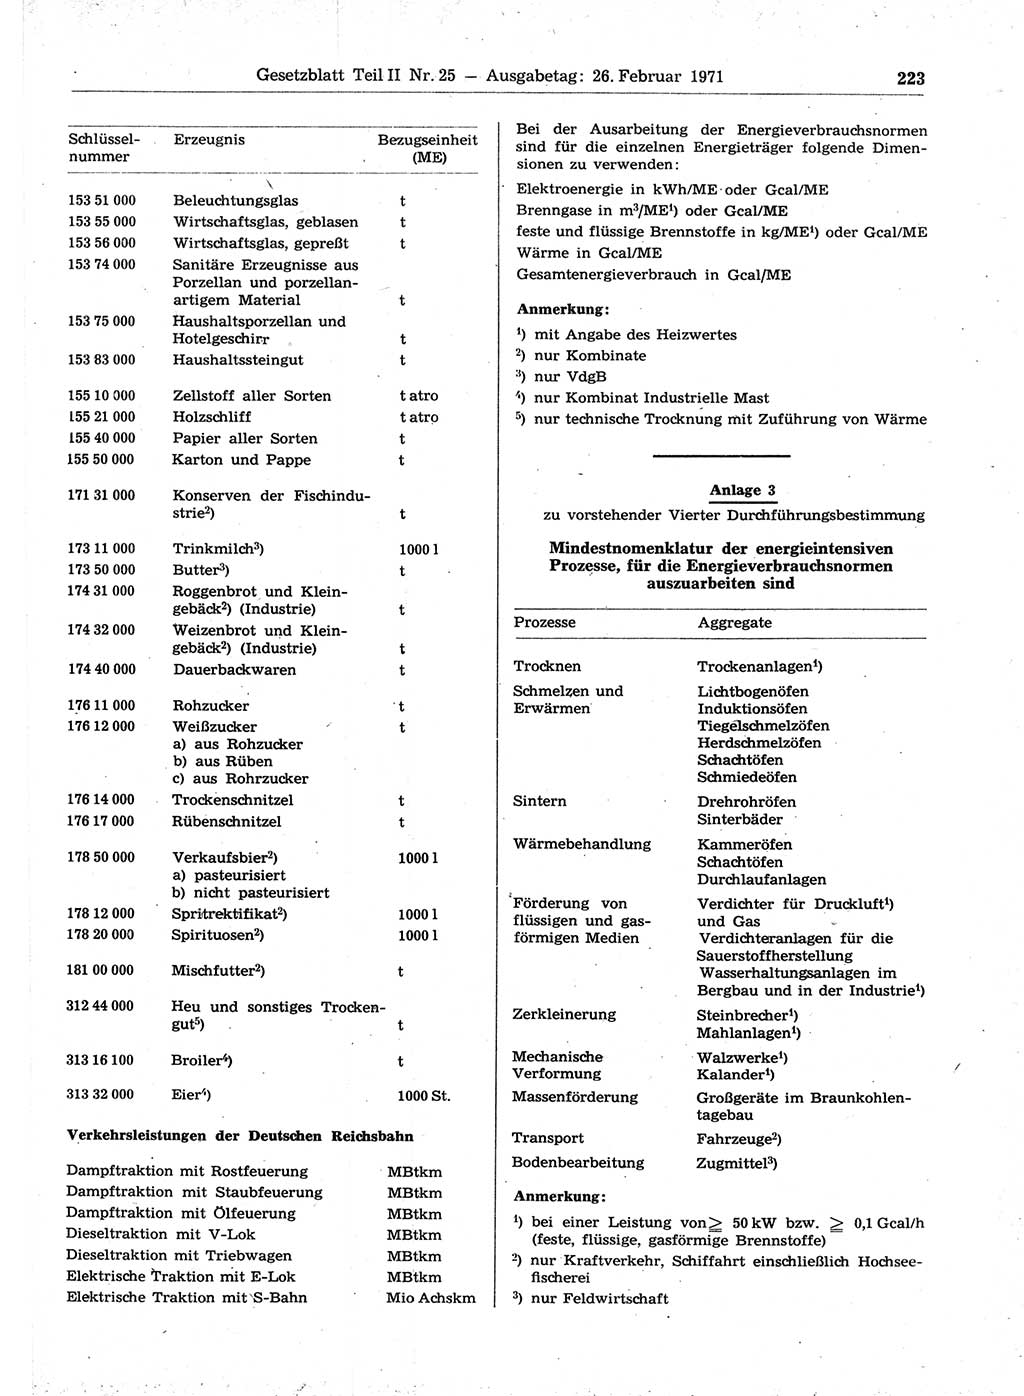 Gesetzblatt (GBl.) der Deutschen Demokratischen Republik (DDR) Teil ⅠⅠ 1971, Seite 223 (GBl. DDR ⅠⅠ 1971, S. 223)